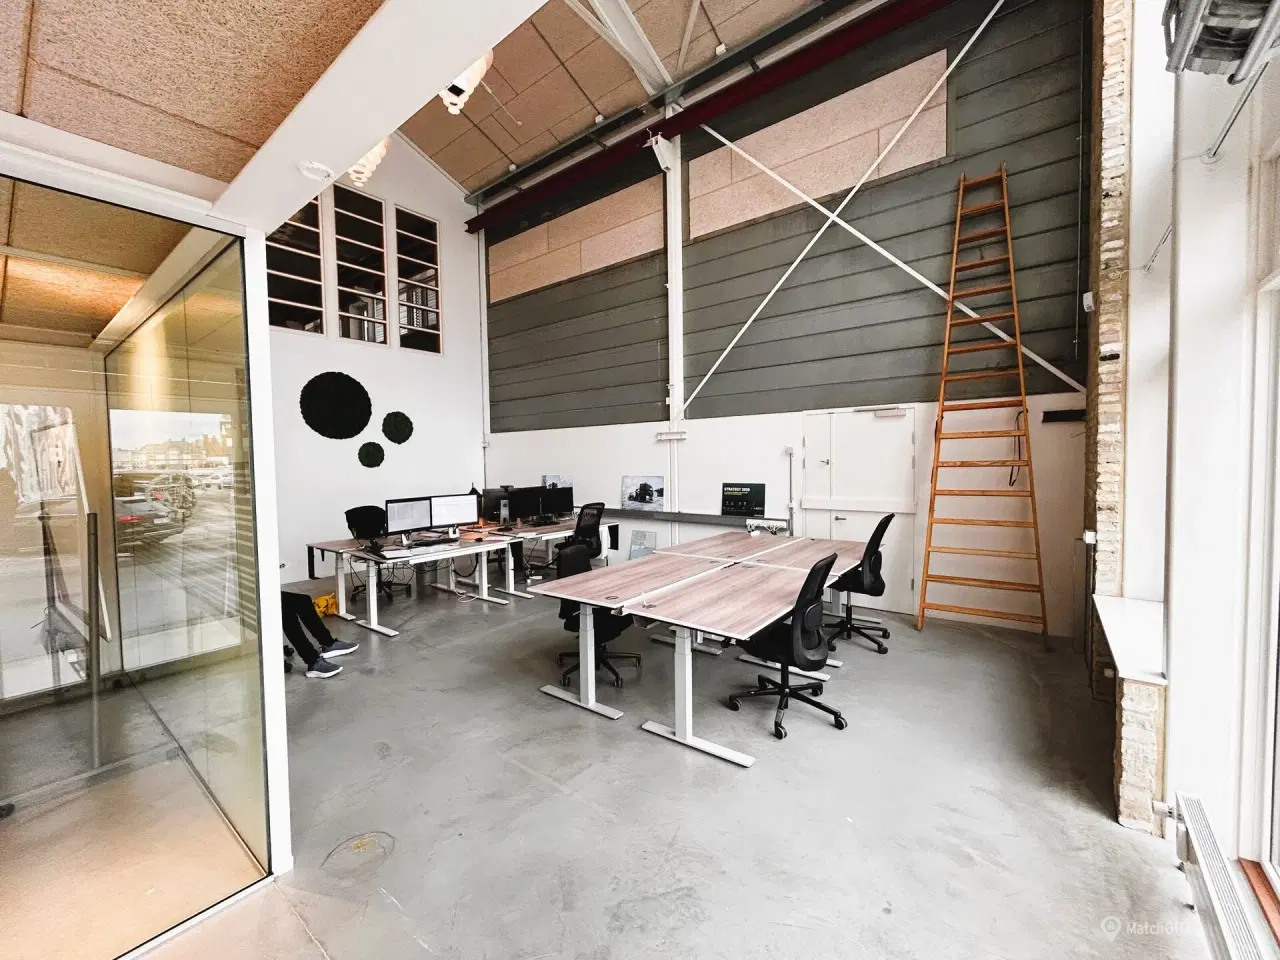 Billede 1 - 8 kontorpladser (105 m2) med eget mødelokale